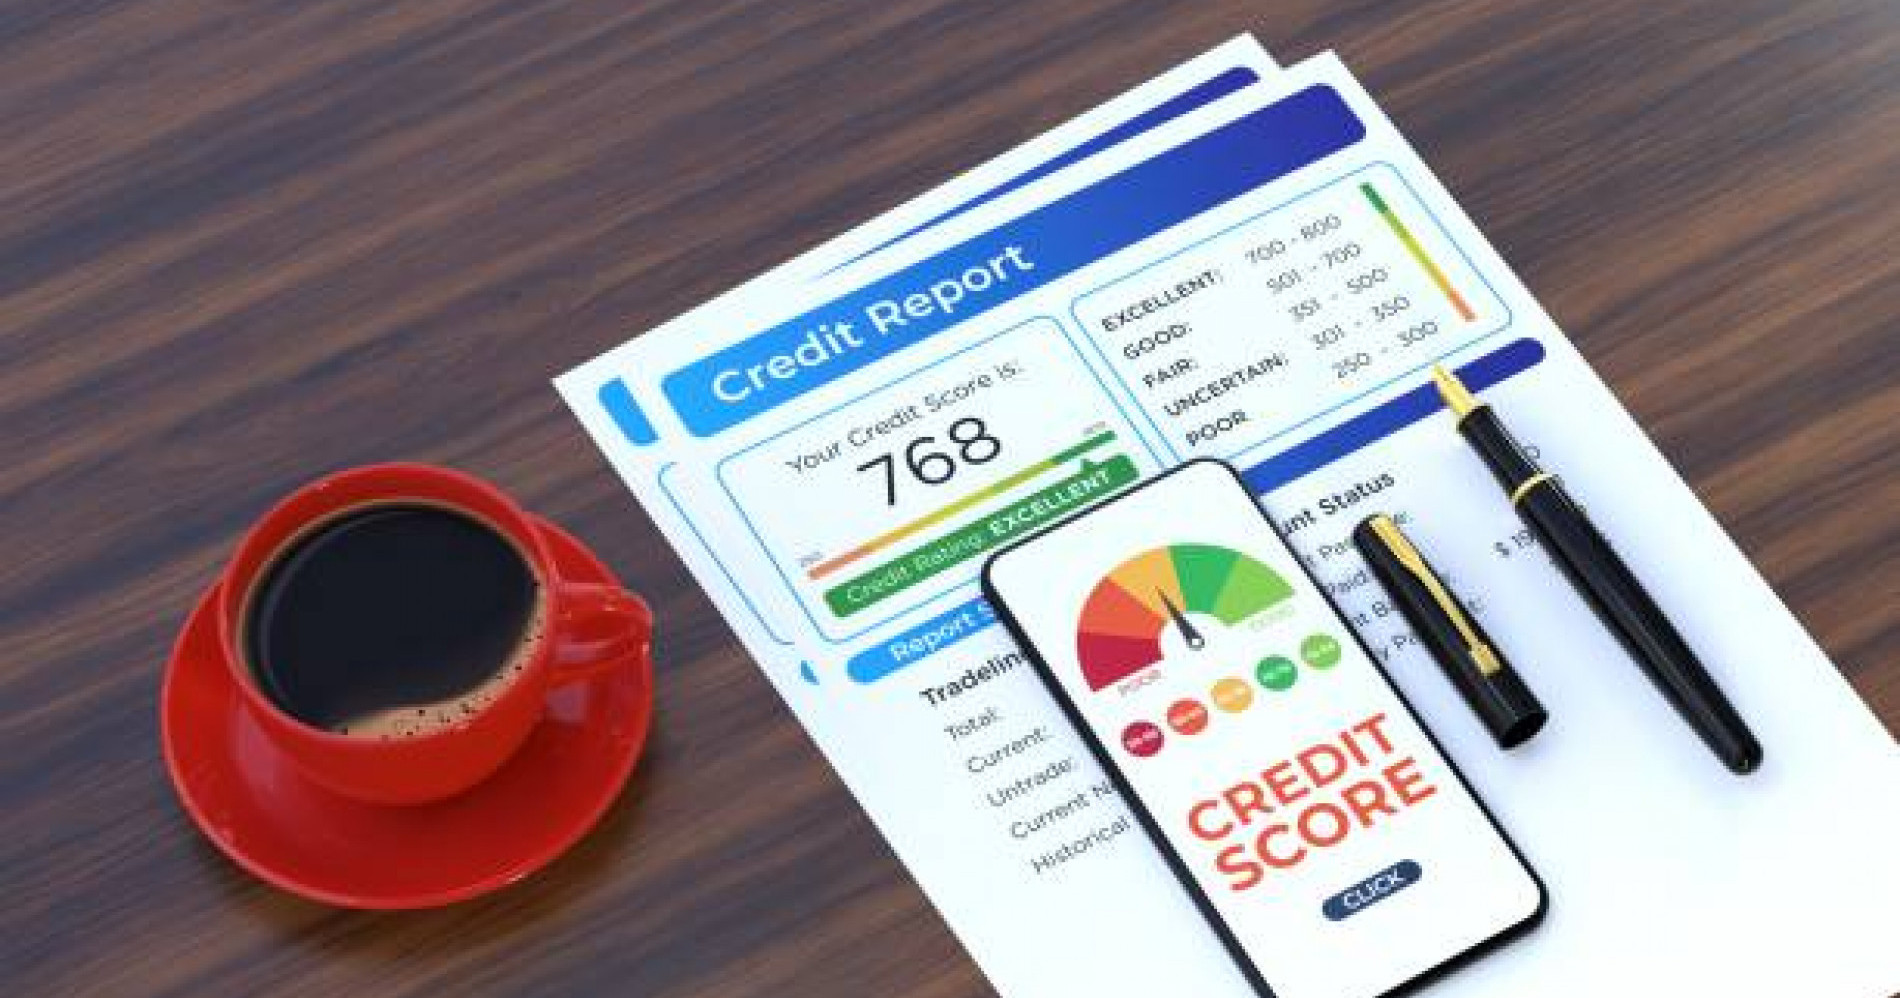 Skor kredit yang baik dapat membuka pintu kesempatan finansial (Sumber Gamvbar: iStock)